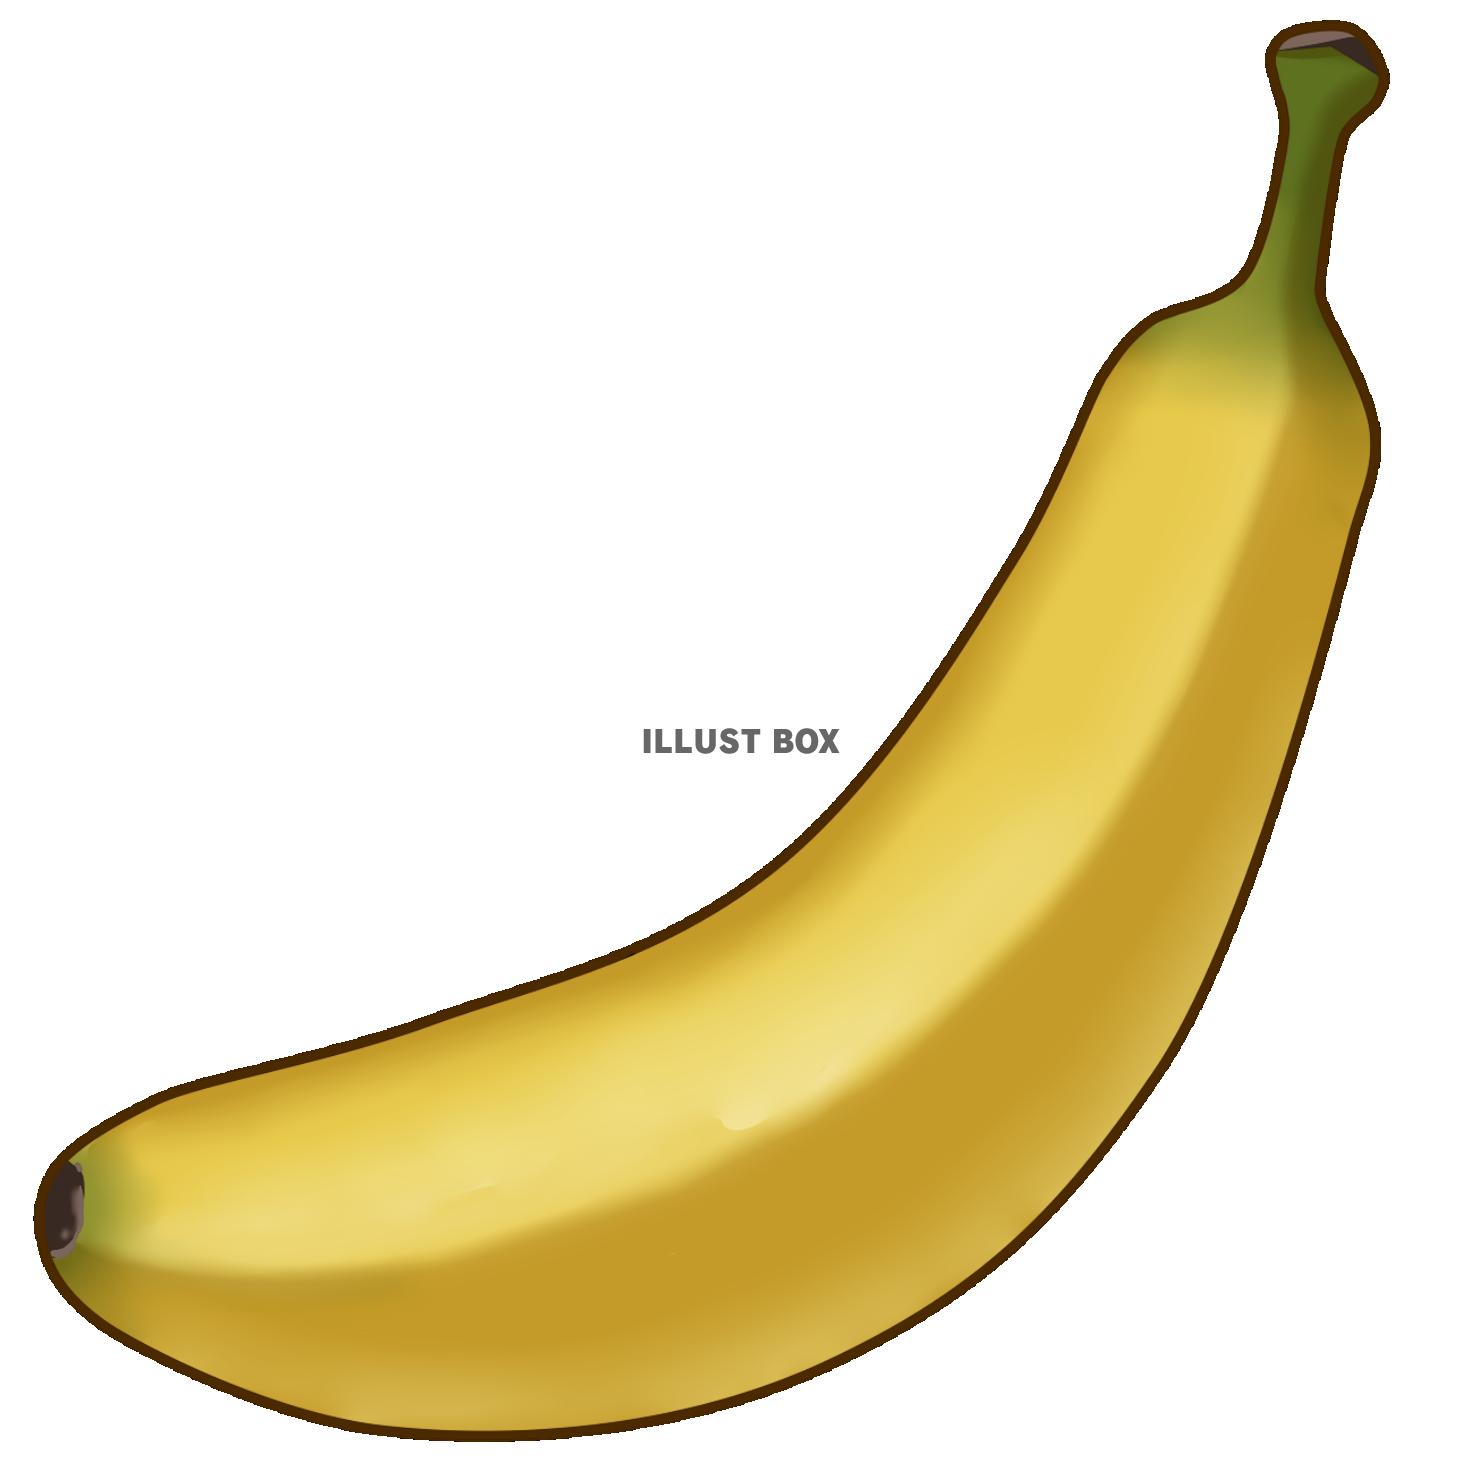 バナナ